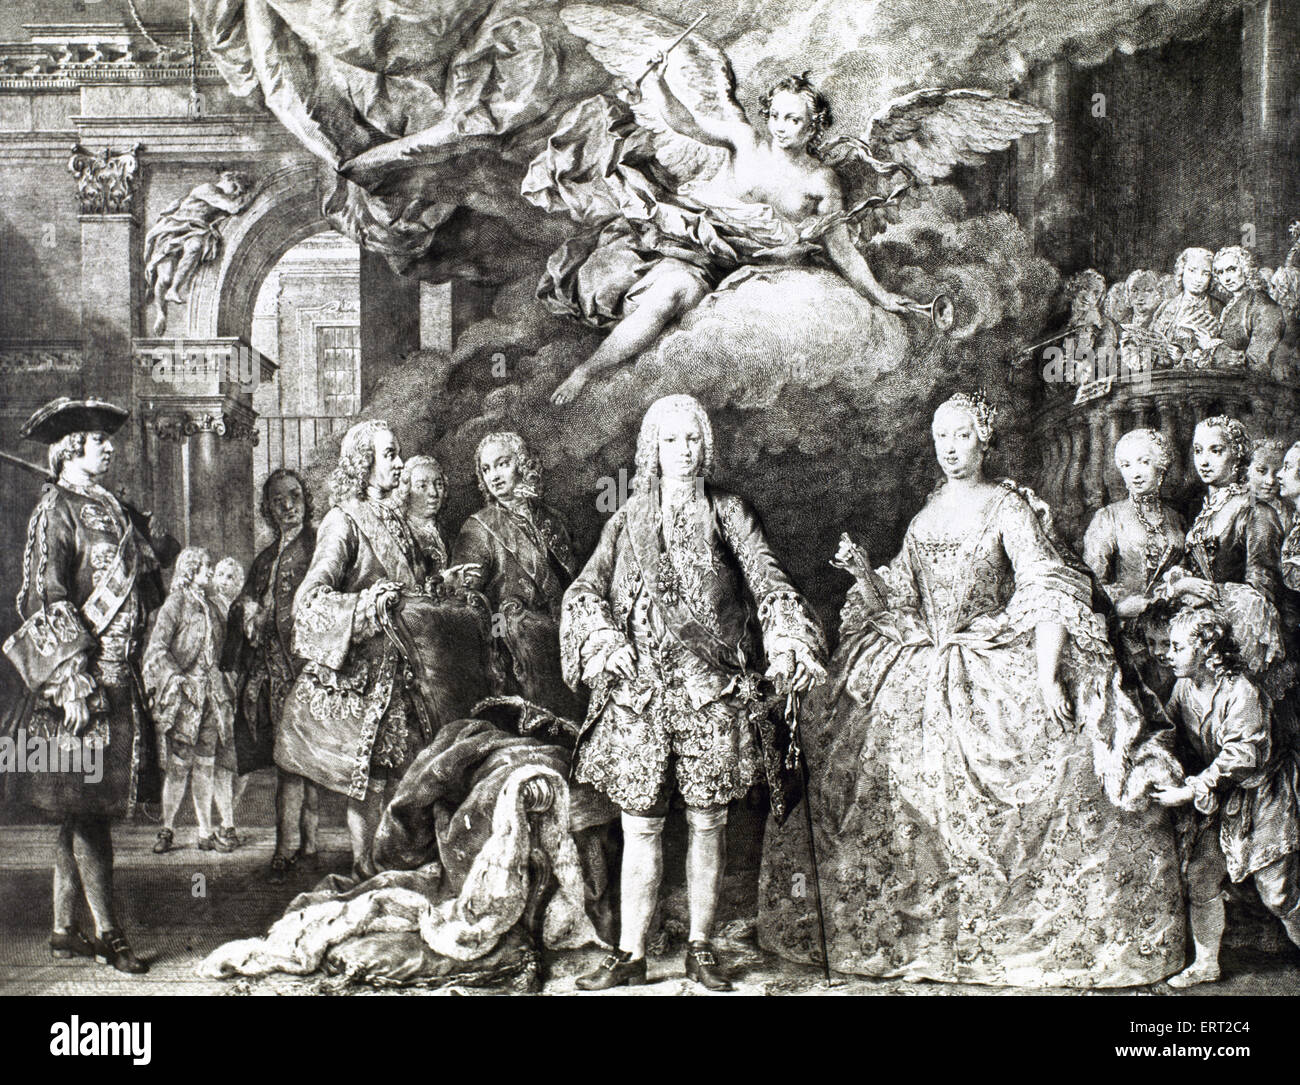 Ferdinando VI di Spagna (1713-1759). La imparato. Re di Spagna. Ferdinando VI e sua moglie Barbara di Braganza e la sua corte. Incisione del XVIII secolo. Foto Stock